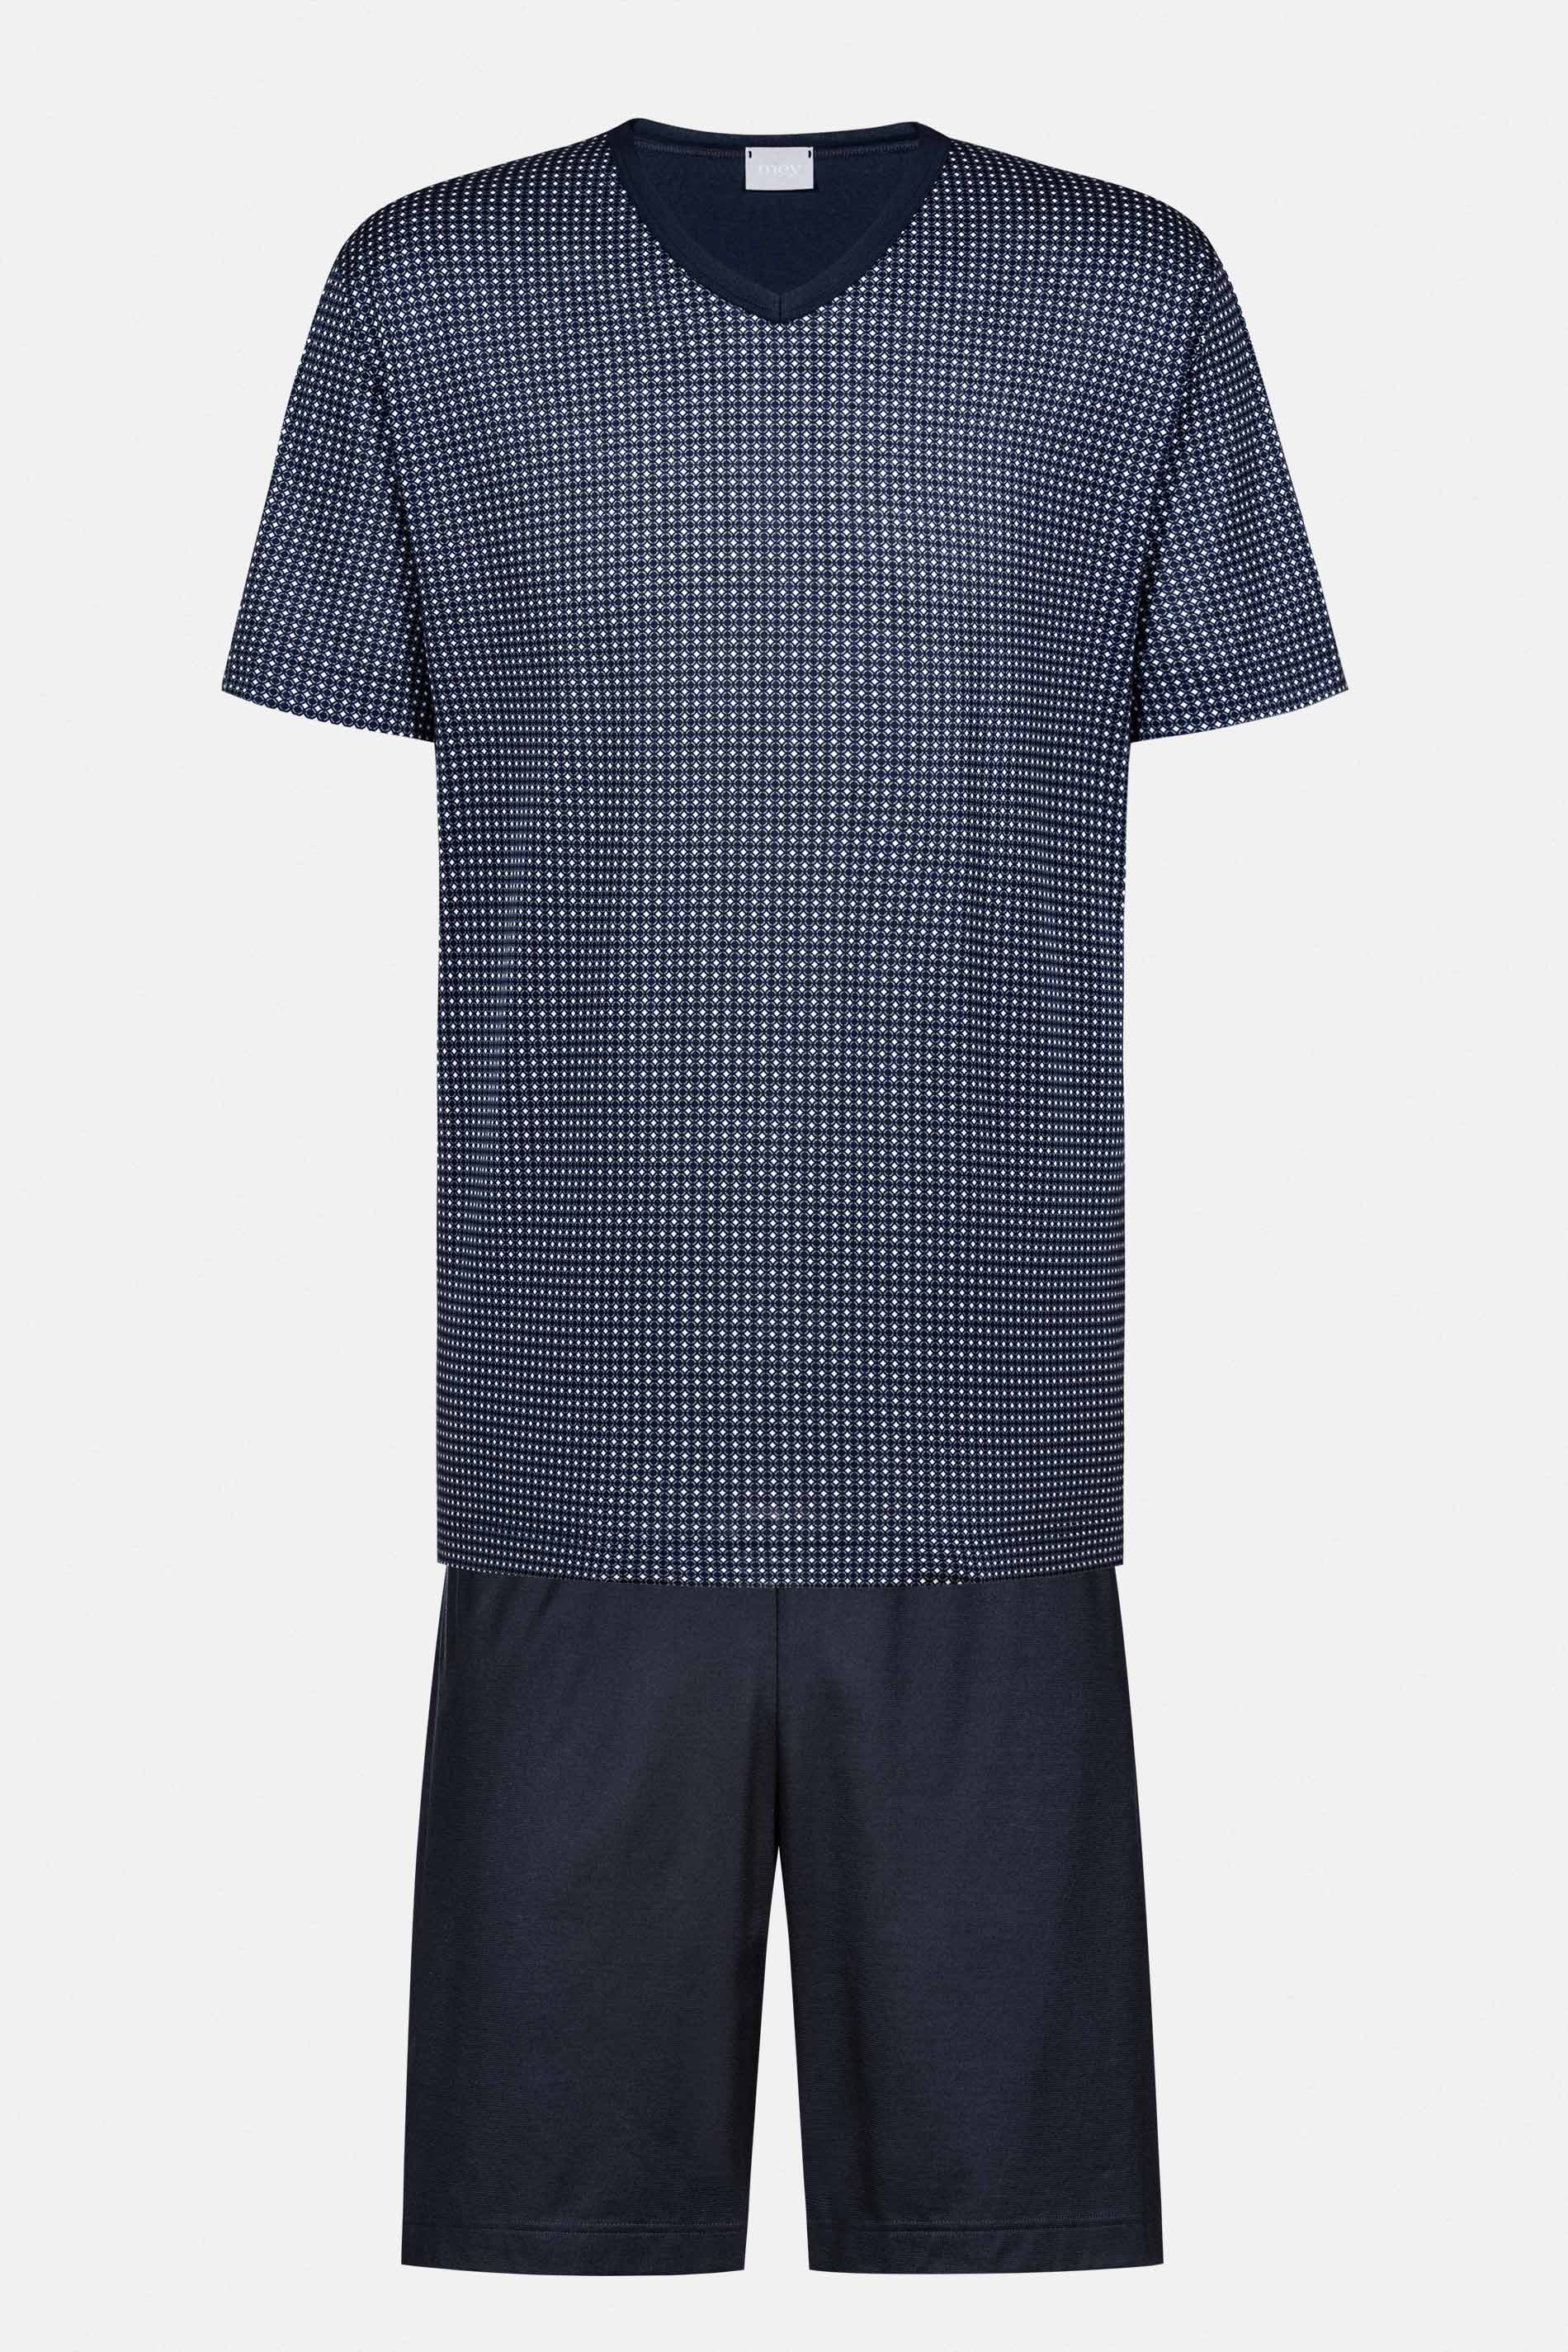 Schlafanzug Serie Blue Grid Freisteller | mey®